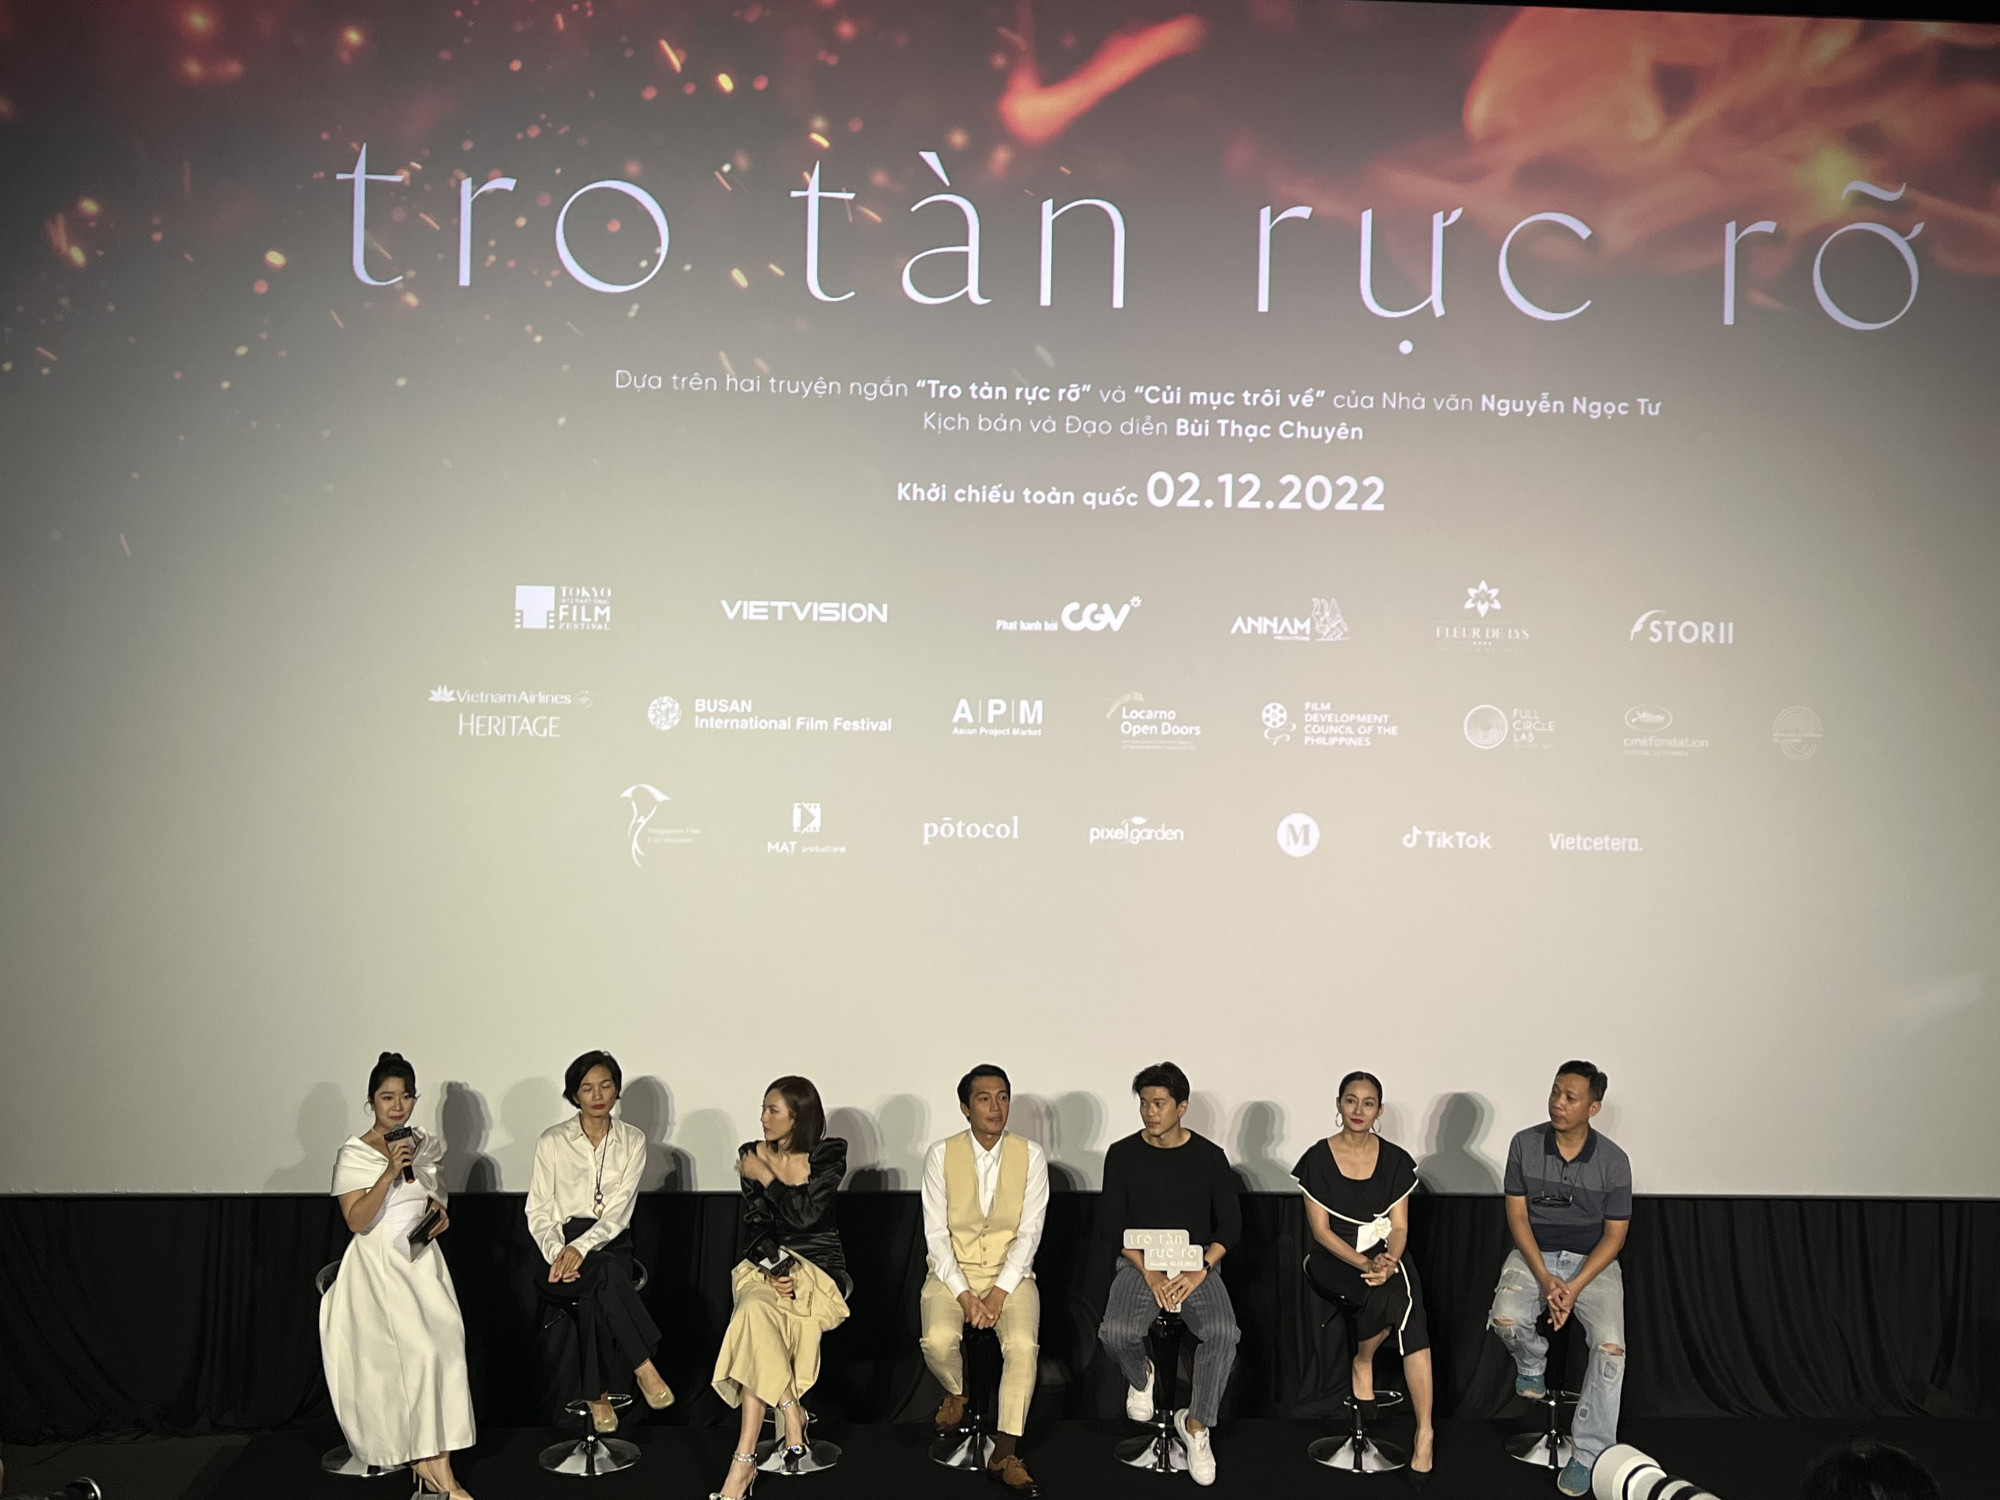 Buổi ra mắt đoàn phim Tro tàn rực rỡ ngày 10/11 thiếu đạo diễn Bùi Thạc Chuyên vì đang công tác tại Hà Nội